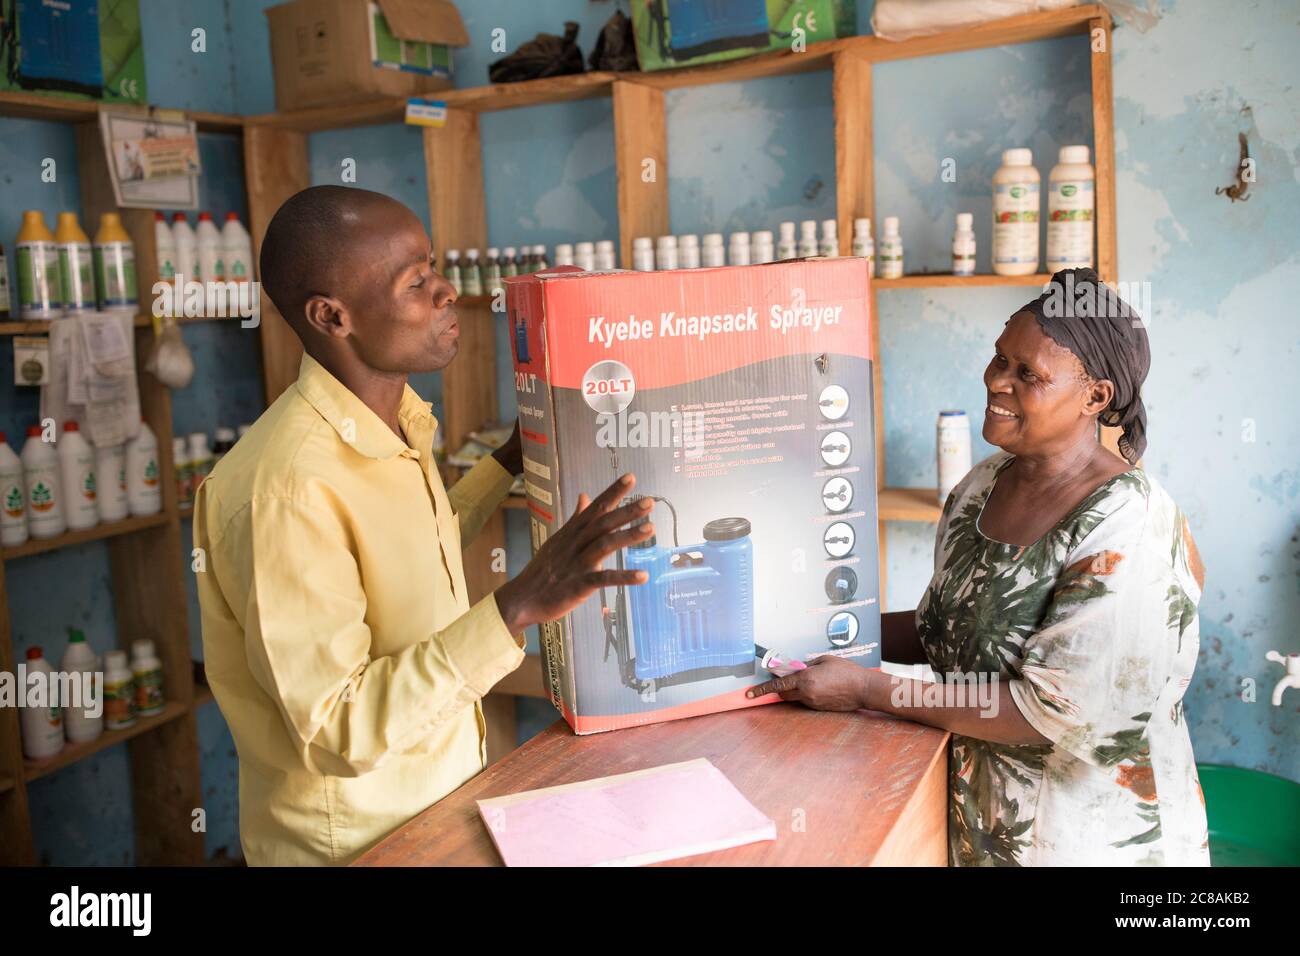 Ein kleines landwirtschaftliches Versorgungsgeschäft verkauft ein Rucksacksprühgerät für den Einsatz mit Herbiziden, Pestiziden und Düngemitteln im Kyotera District, Uganda, Afrika. Stockfoto